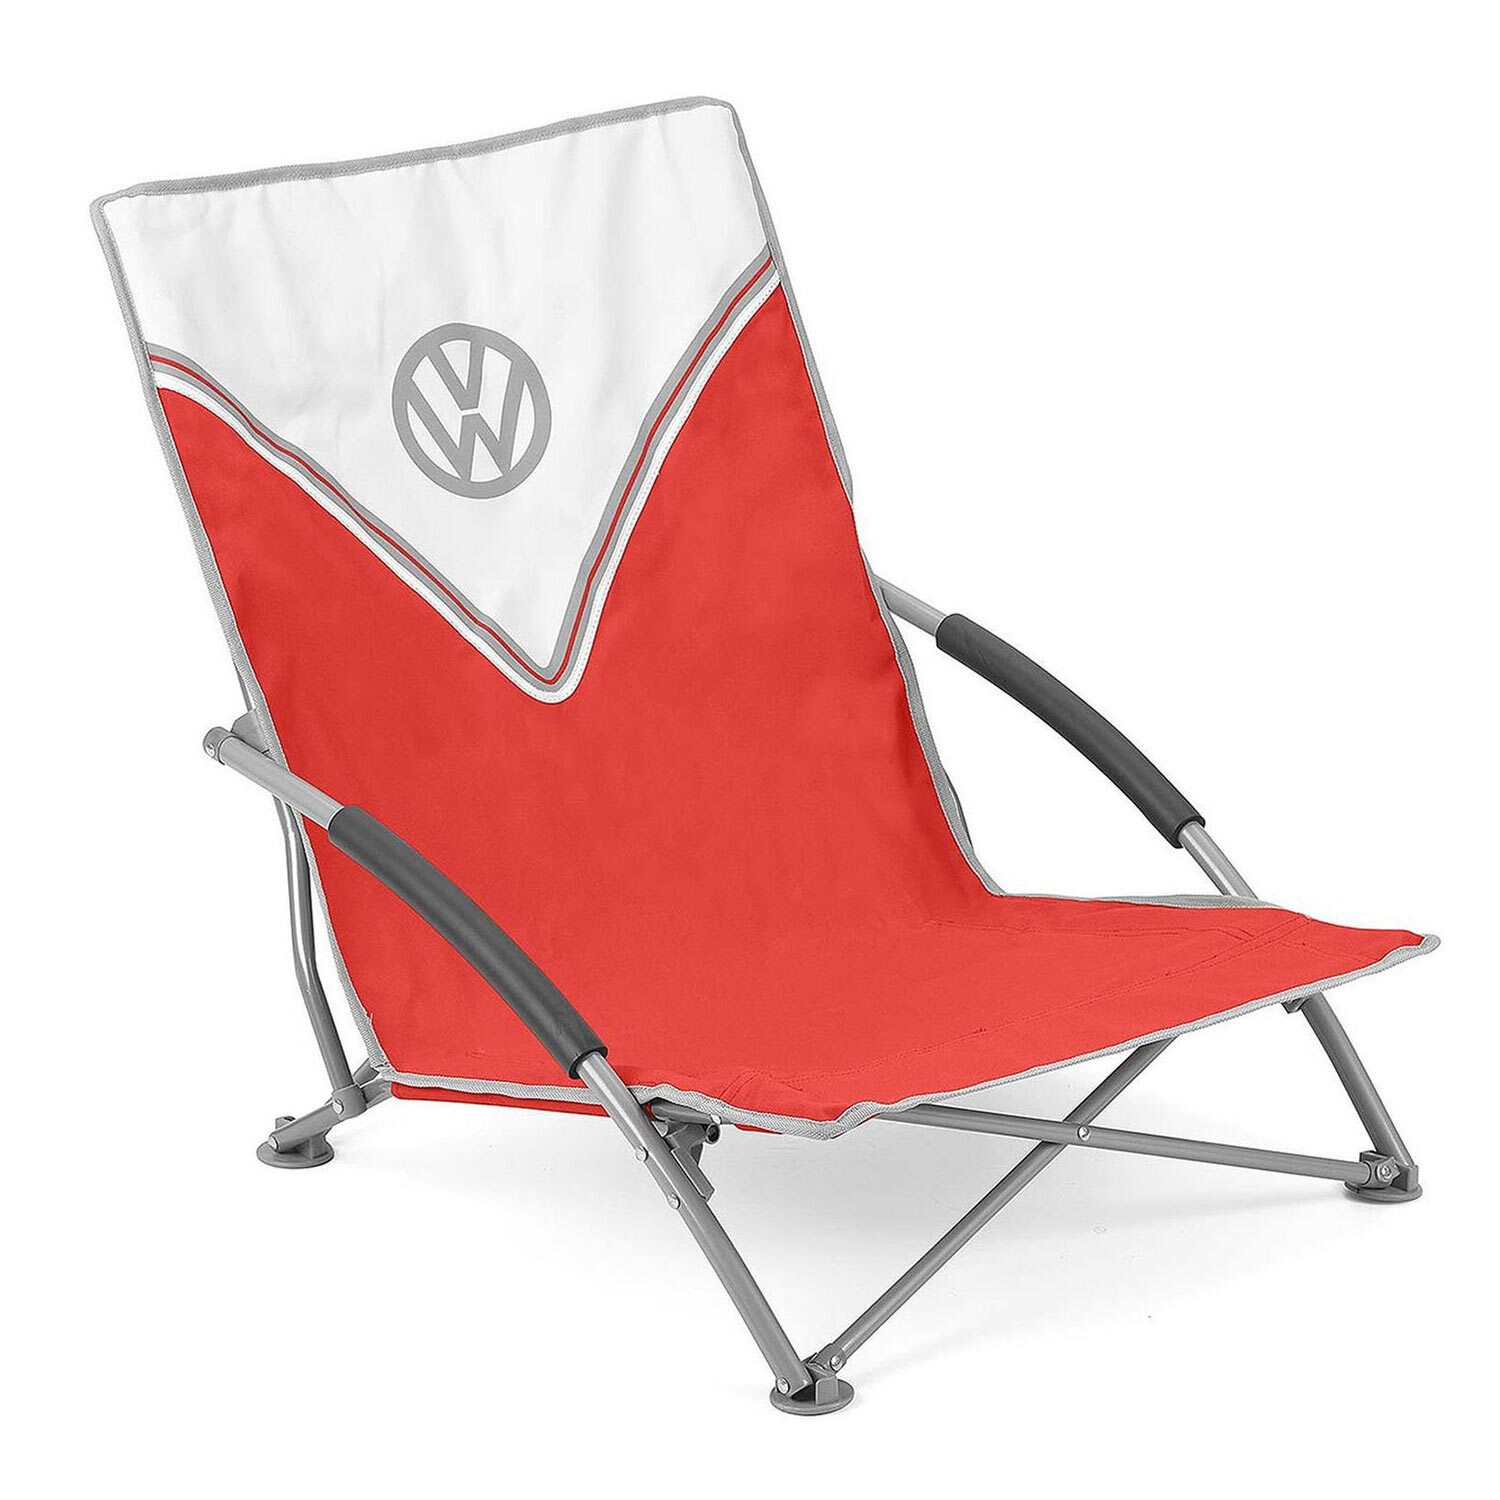 VOLKSWAGEN Volkswagen lage campingstoel rood